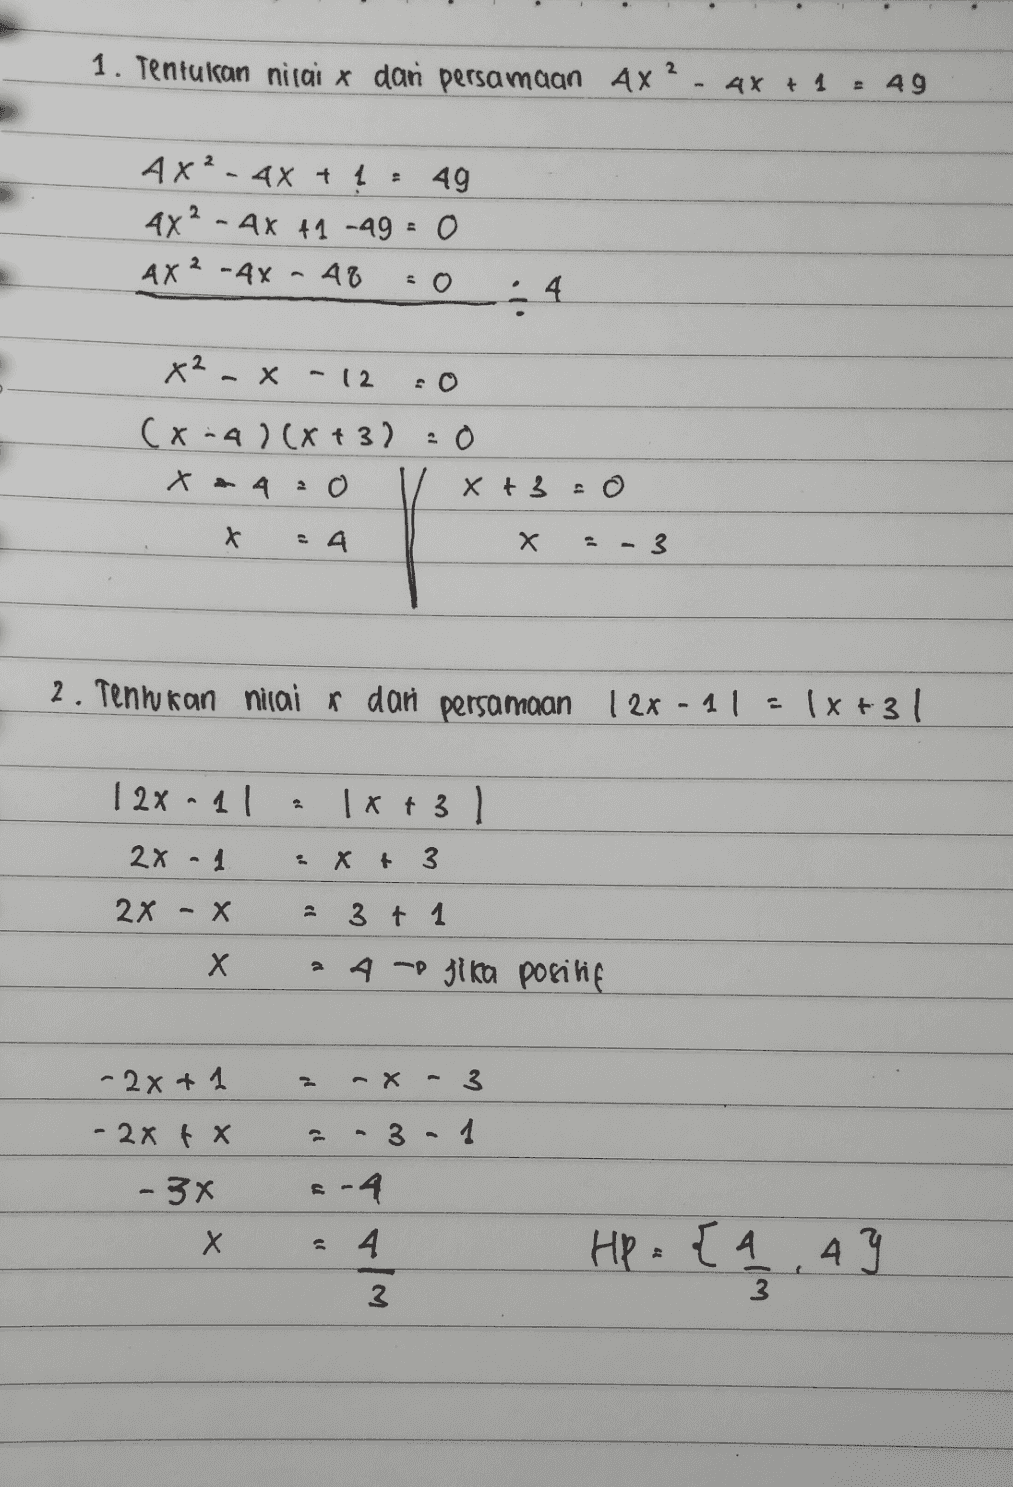 1. Tentukan nilai x dan persamaan Ax? - 4x + 1 49 AX² - 4x + 1 49 4x2 - 4x +1 -49 - 0 AX²-4X - 48 :4 x² - x - (2 (x-4)(x+3) = 0 x = 4:0 x + 3 = 24 x 3 2. Tenwran nilai r dan persamaan 12x - 11 (x+31 128-11 2 1x+ 31 2x - 1 Xt 3 2x - X 3 + 1 X Х 24 - jika positif -2x+1 2 ax 3 - 2x tx כך 3 1 - 3x 6-4 X Х 4 Hp: {4,47 3 